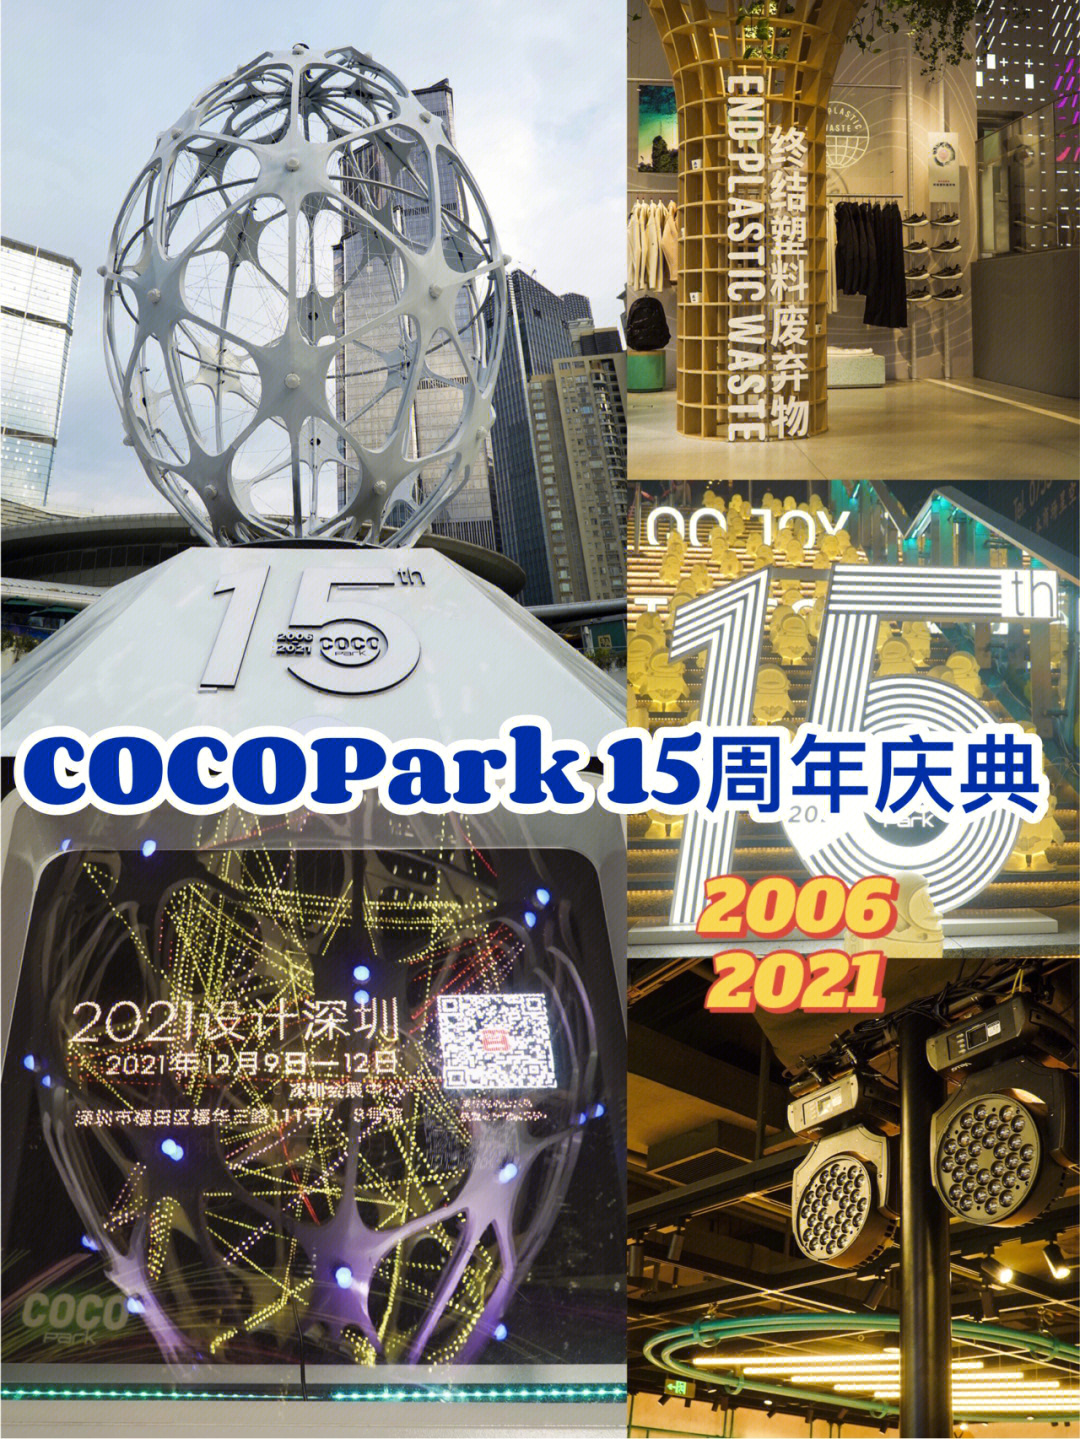 福田星河 cocopark与设计深圳,联手共同打造了两大